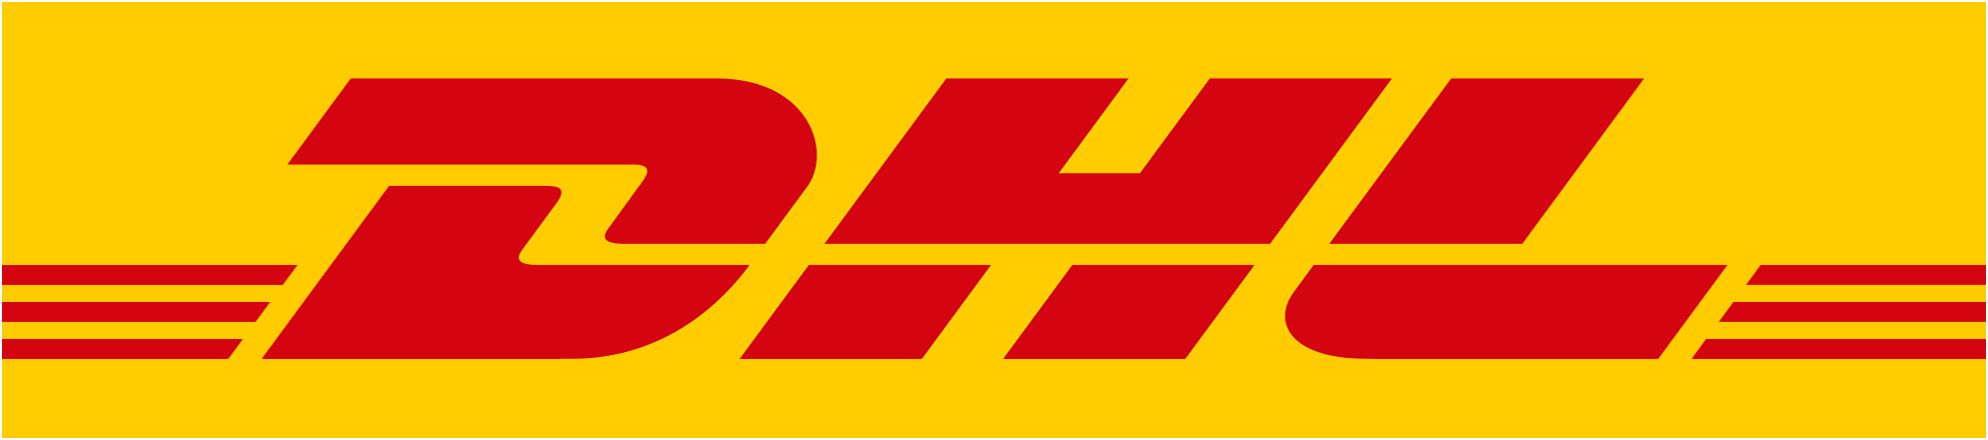 DHL y Aliexpress fomentan juntos el eCommerce internacional